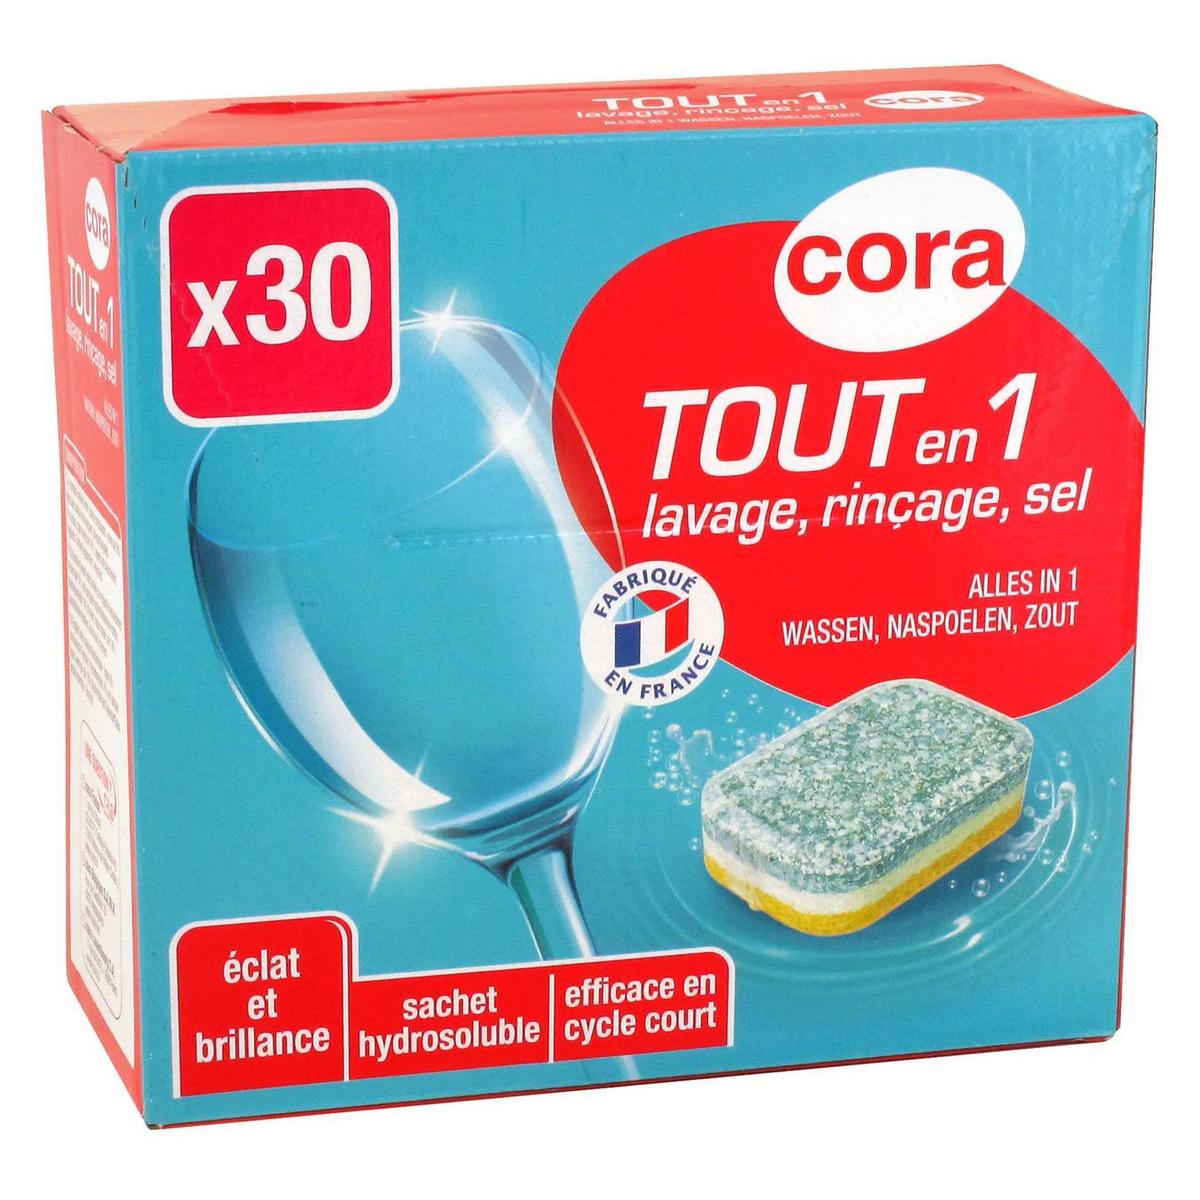 Promotion Cora Gel lave vaisselle concentré 36 lavages, Lot de 2 x